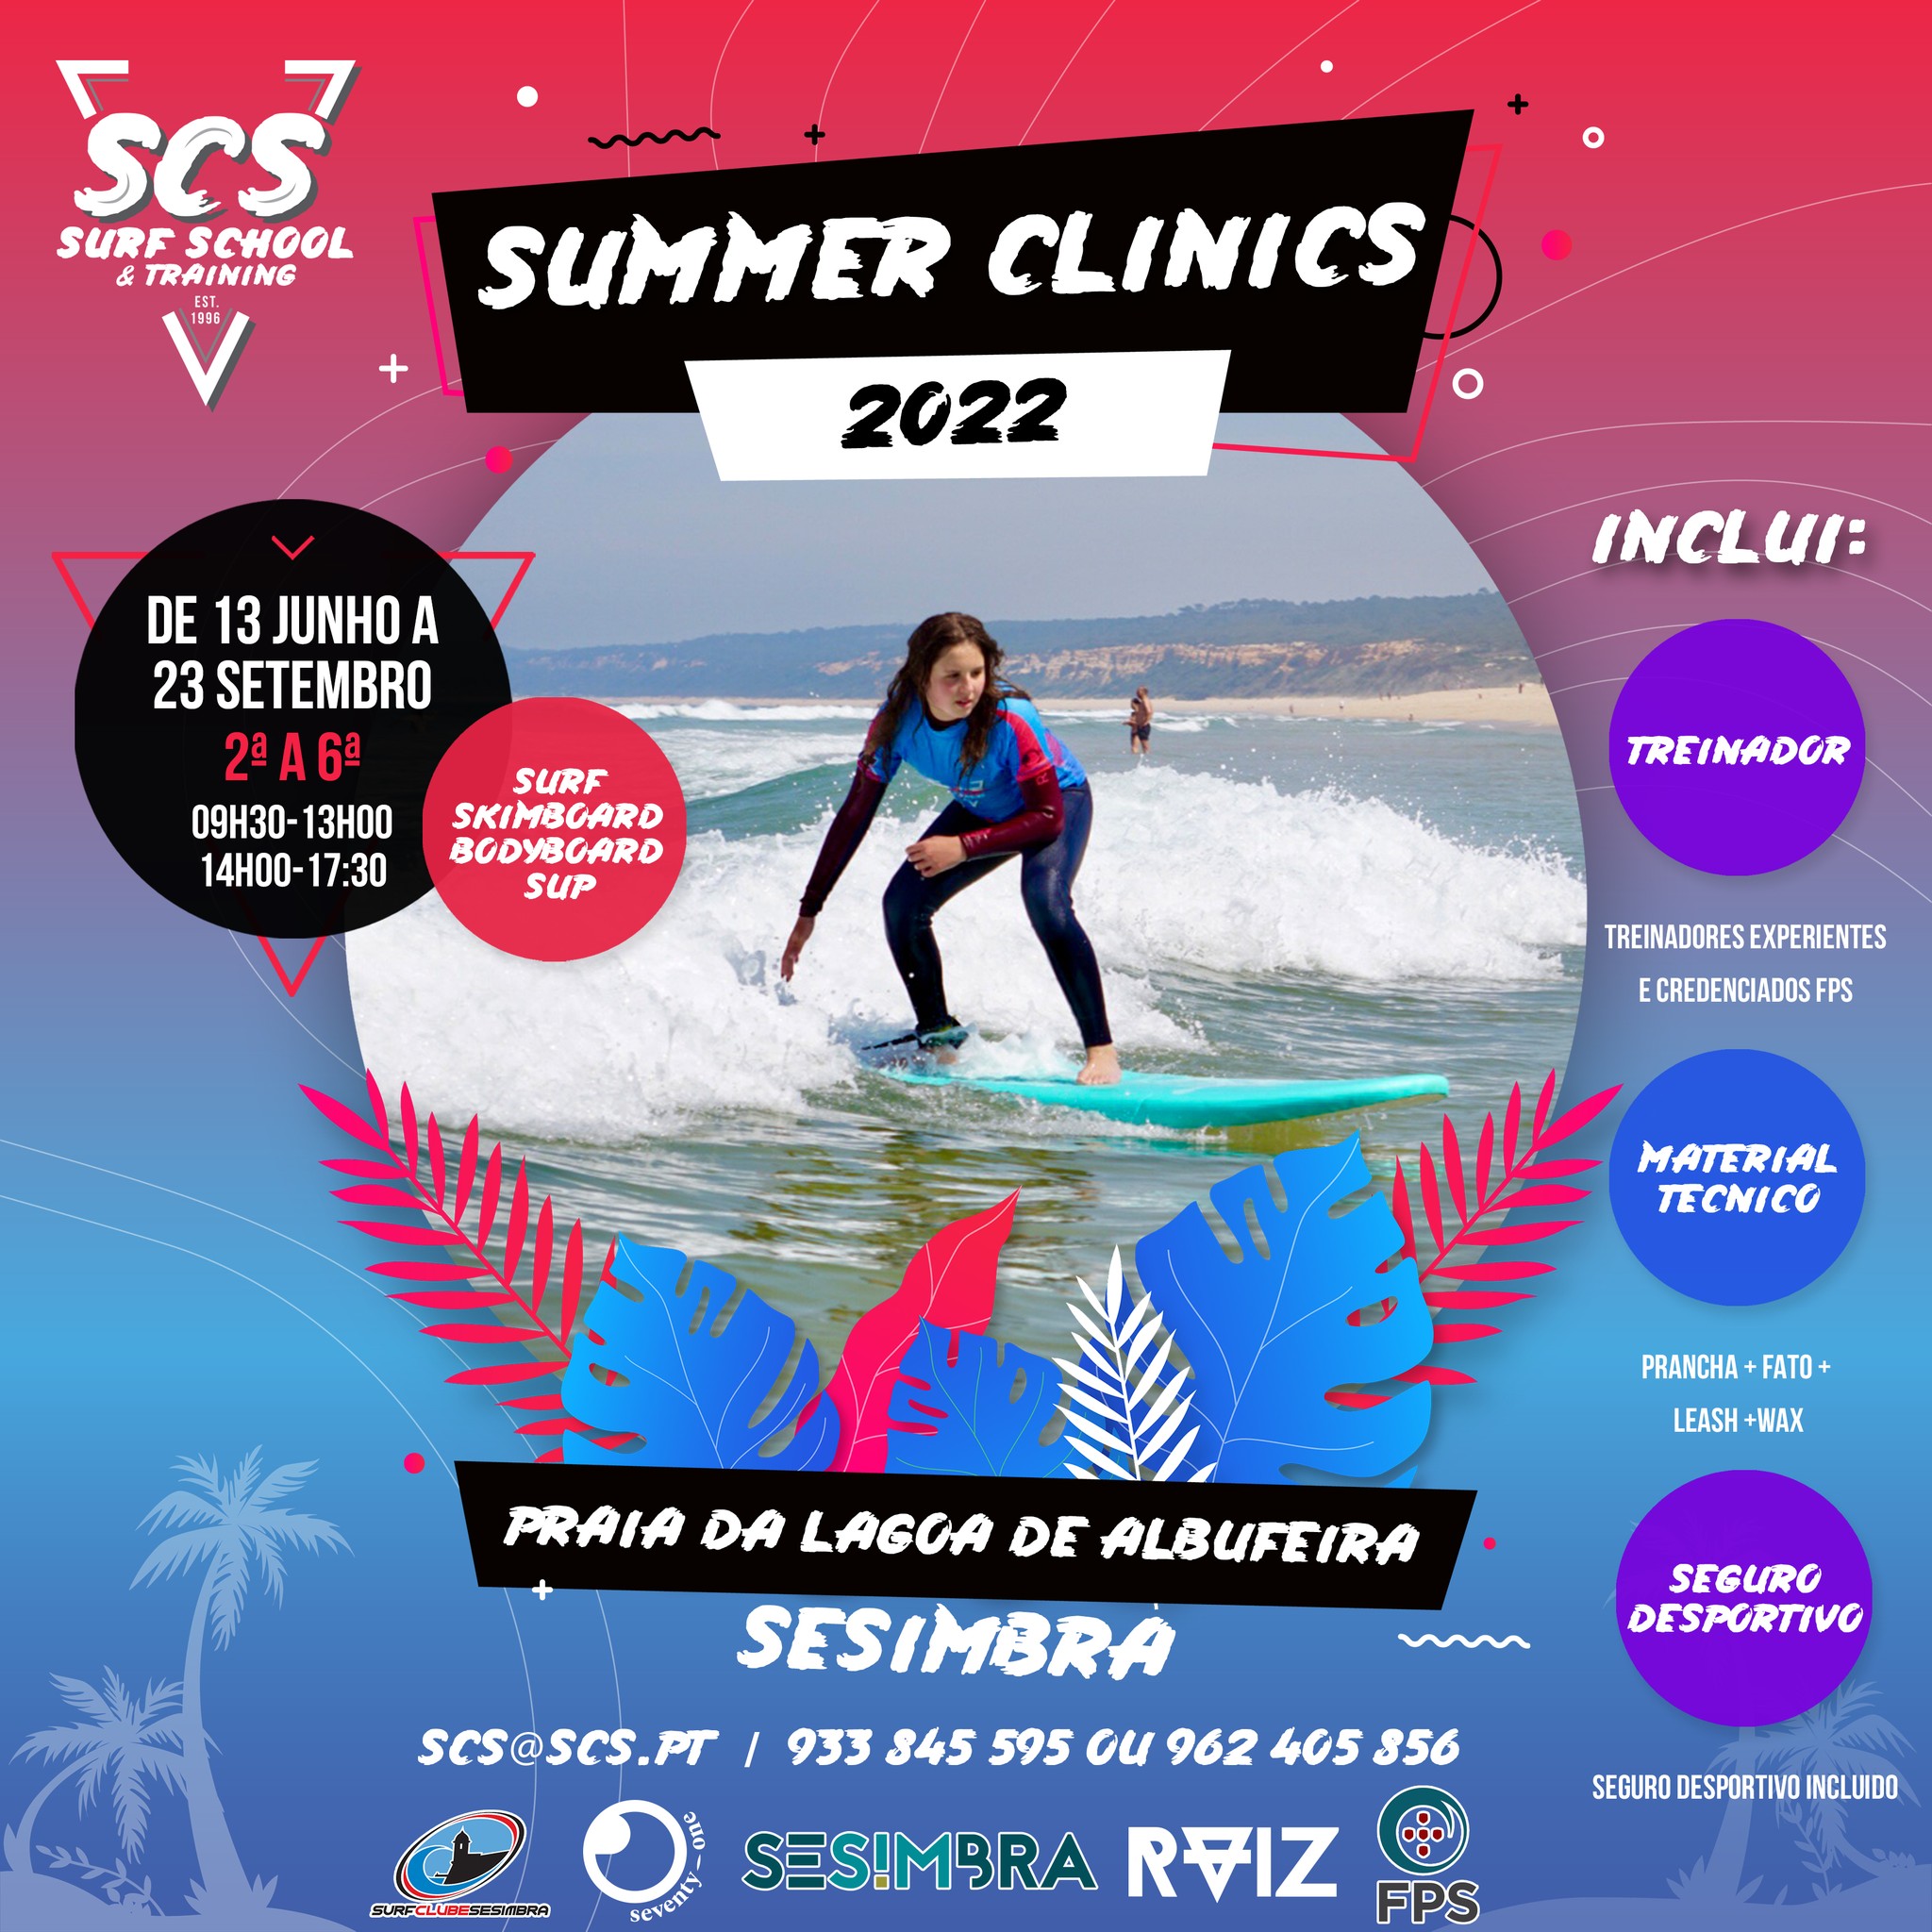 SCS Summer Clinics 2022